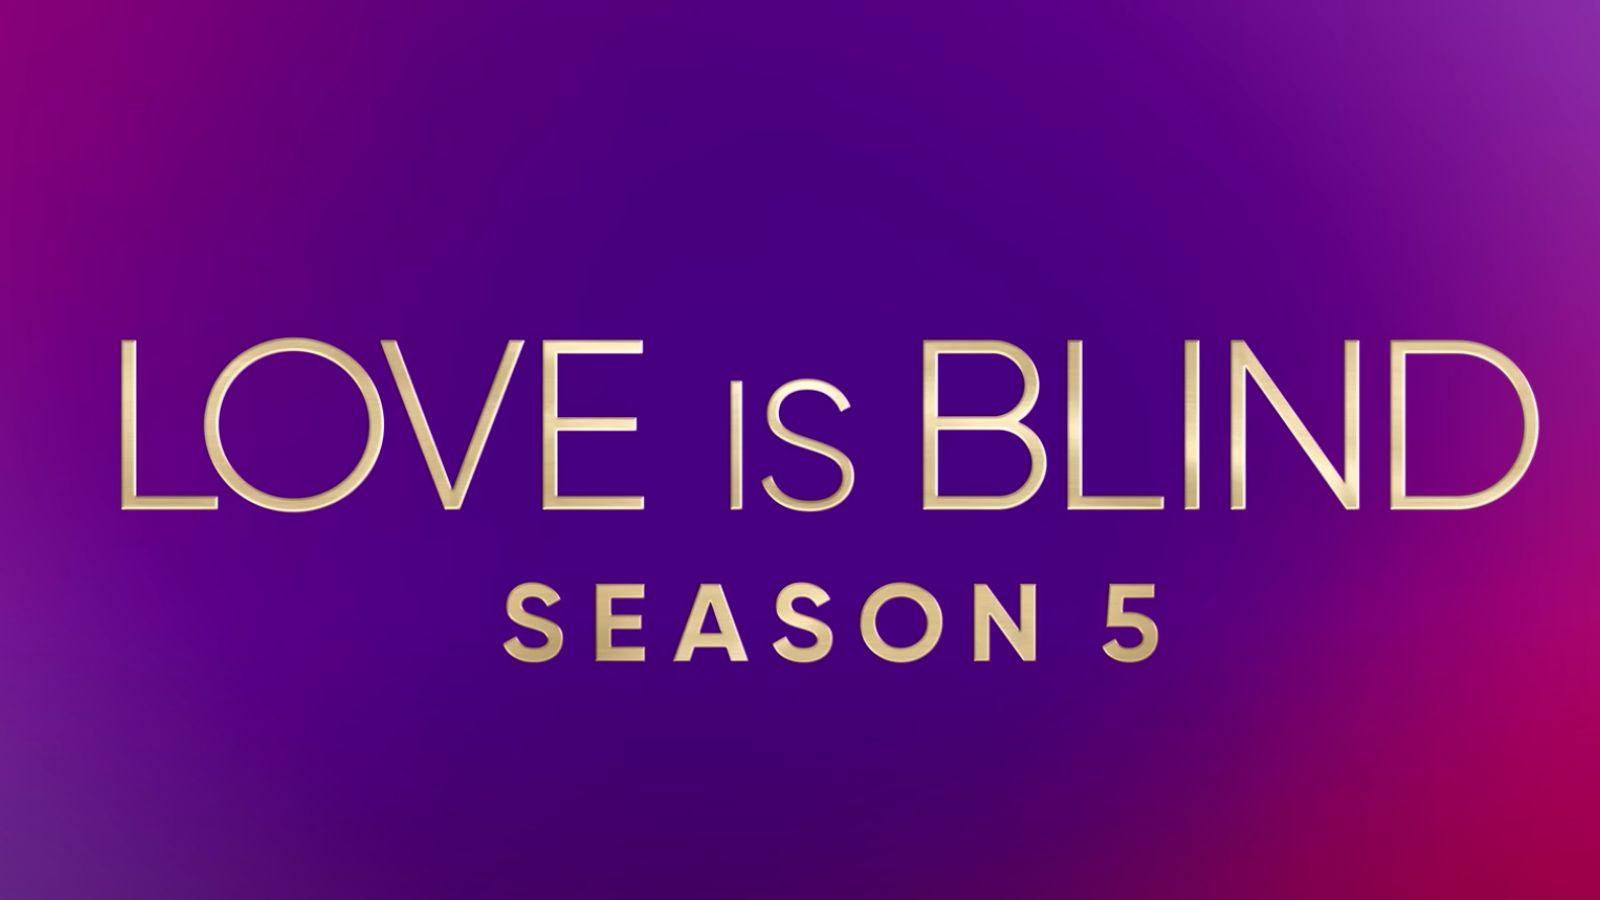 Love is blind season 5